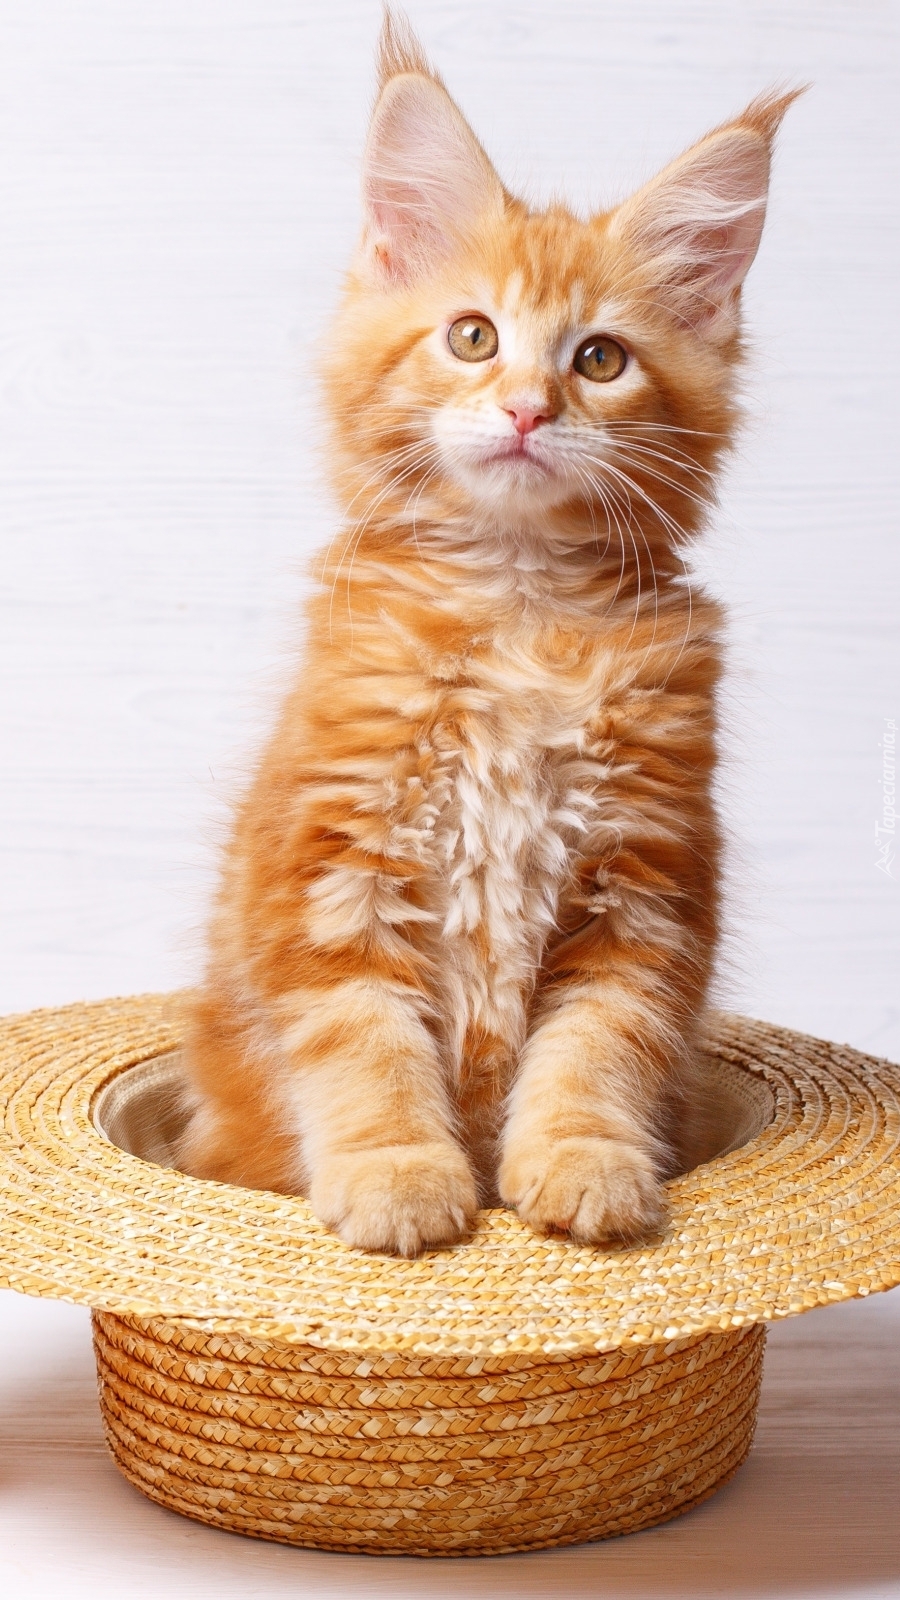 Rudawy kotek w słomianym kapeluszu